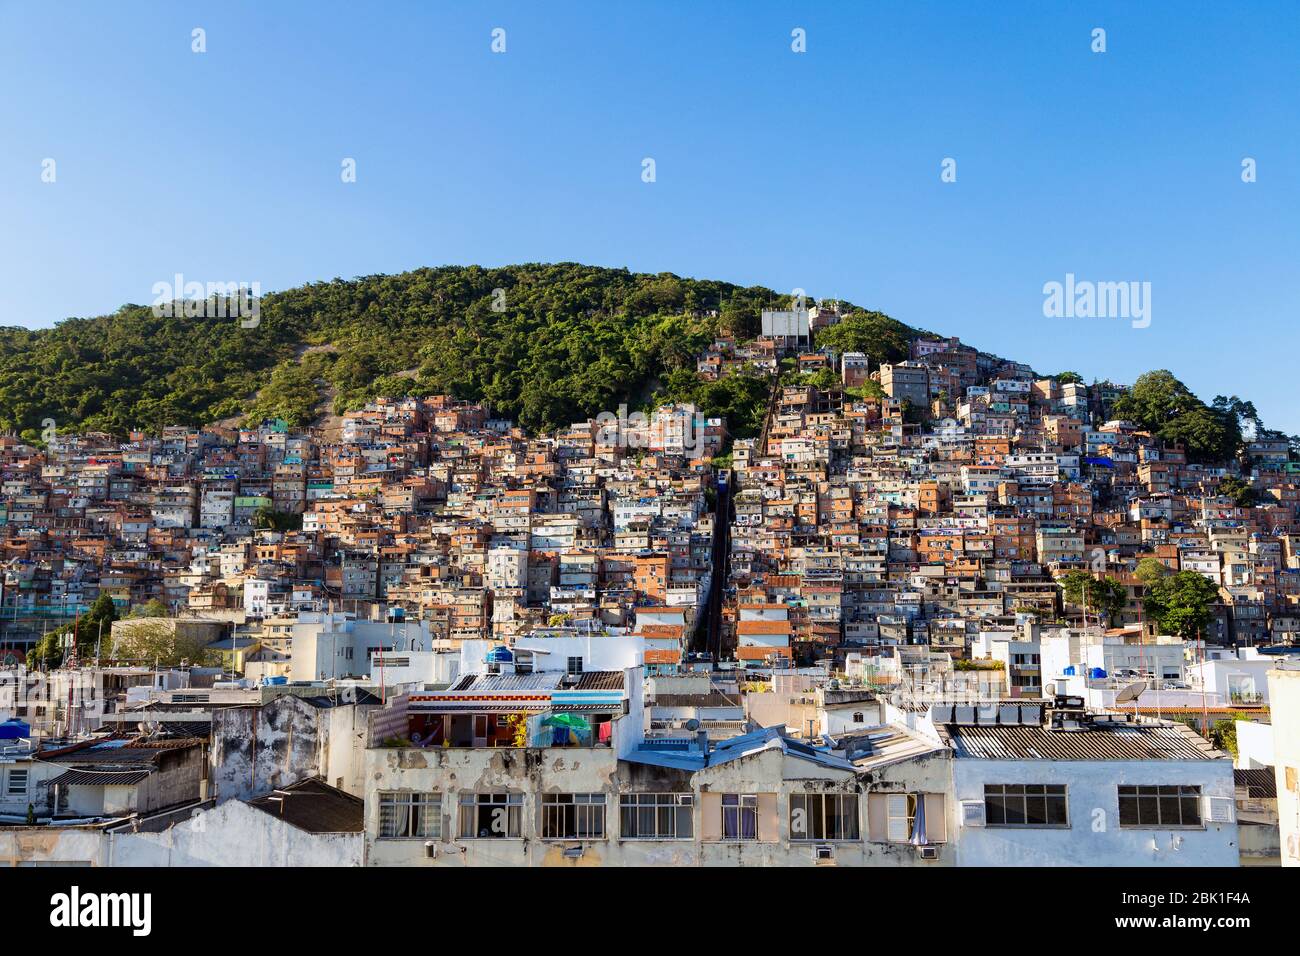 Favela de Río de Janeiro, Brasil. Casas coloridas en una colina. Zona Sul de Río. Barrios pobres de la ciudad. Foto de stock